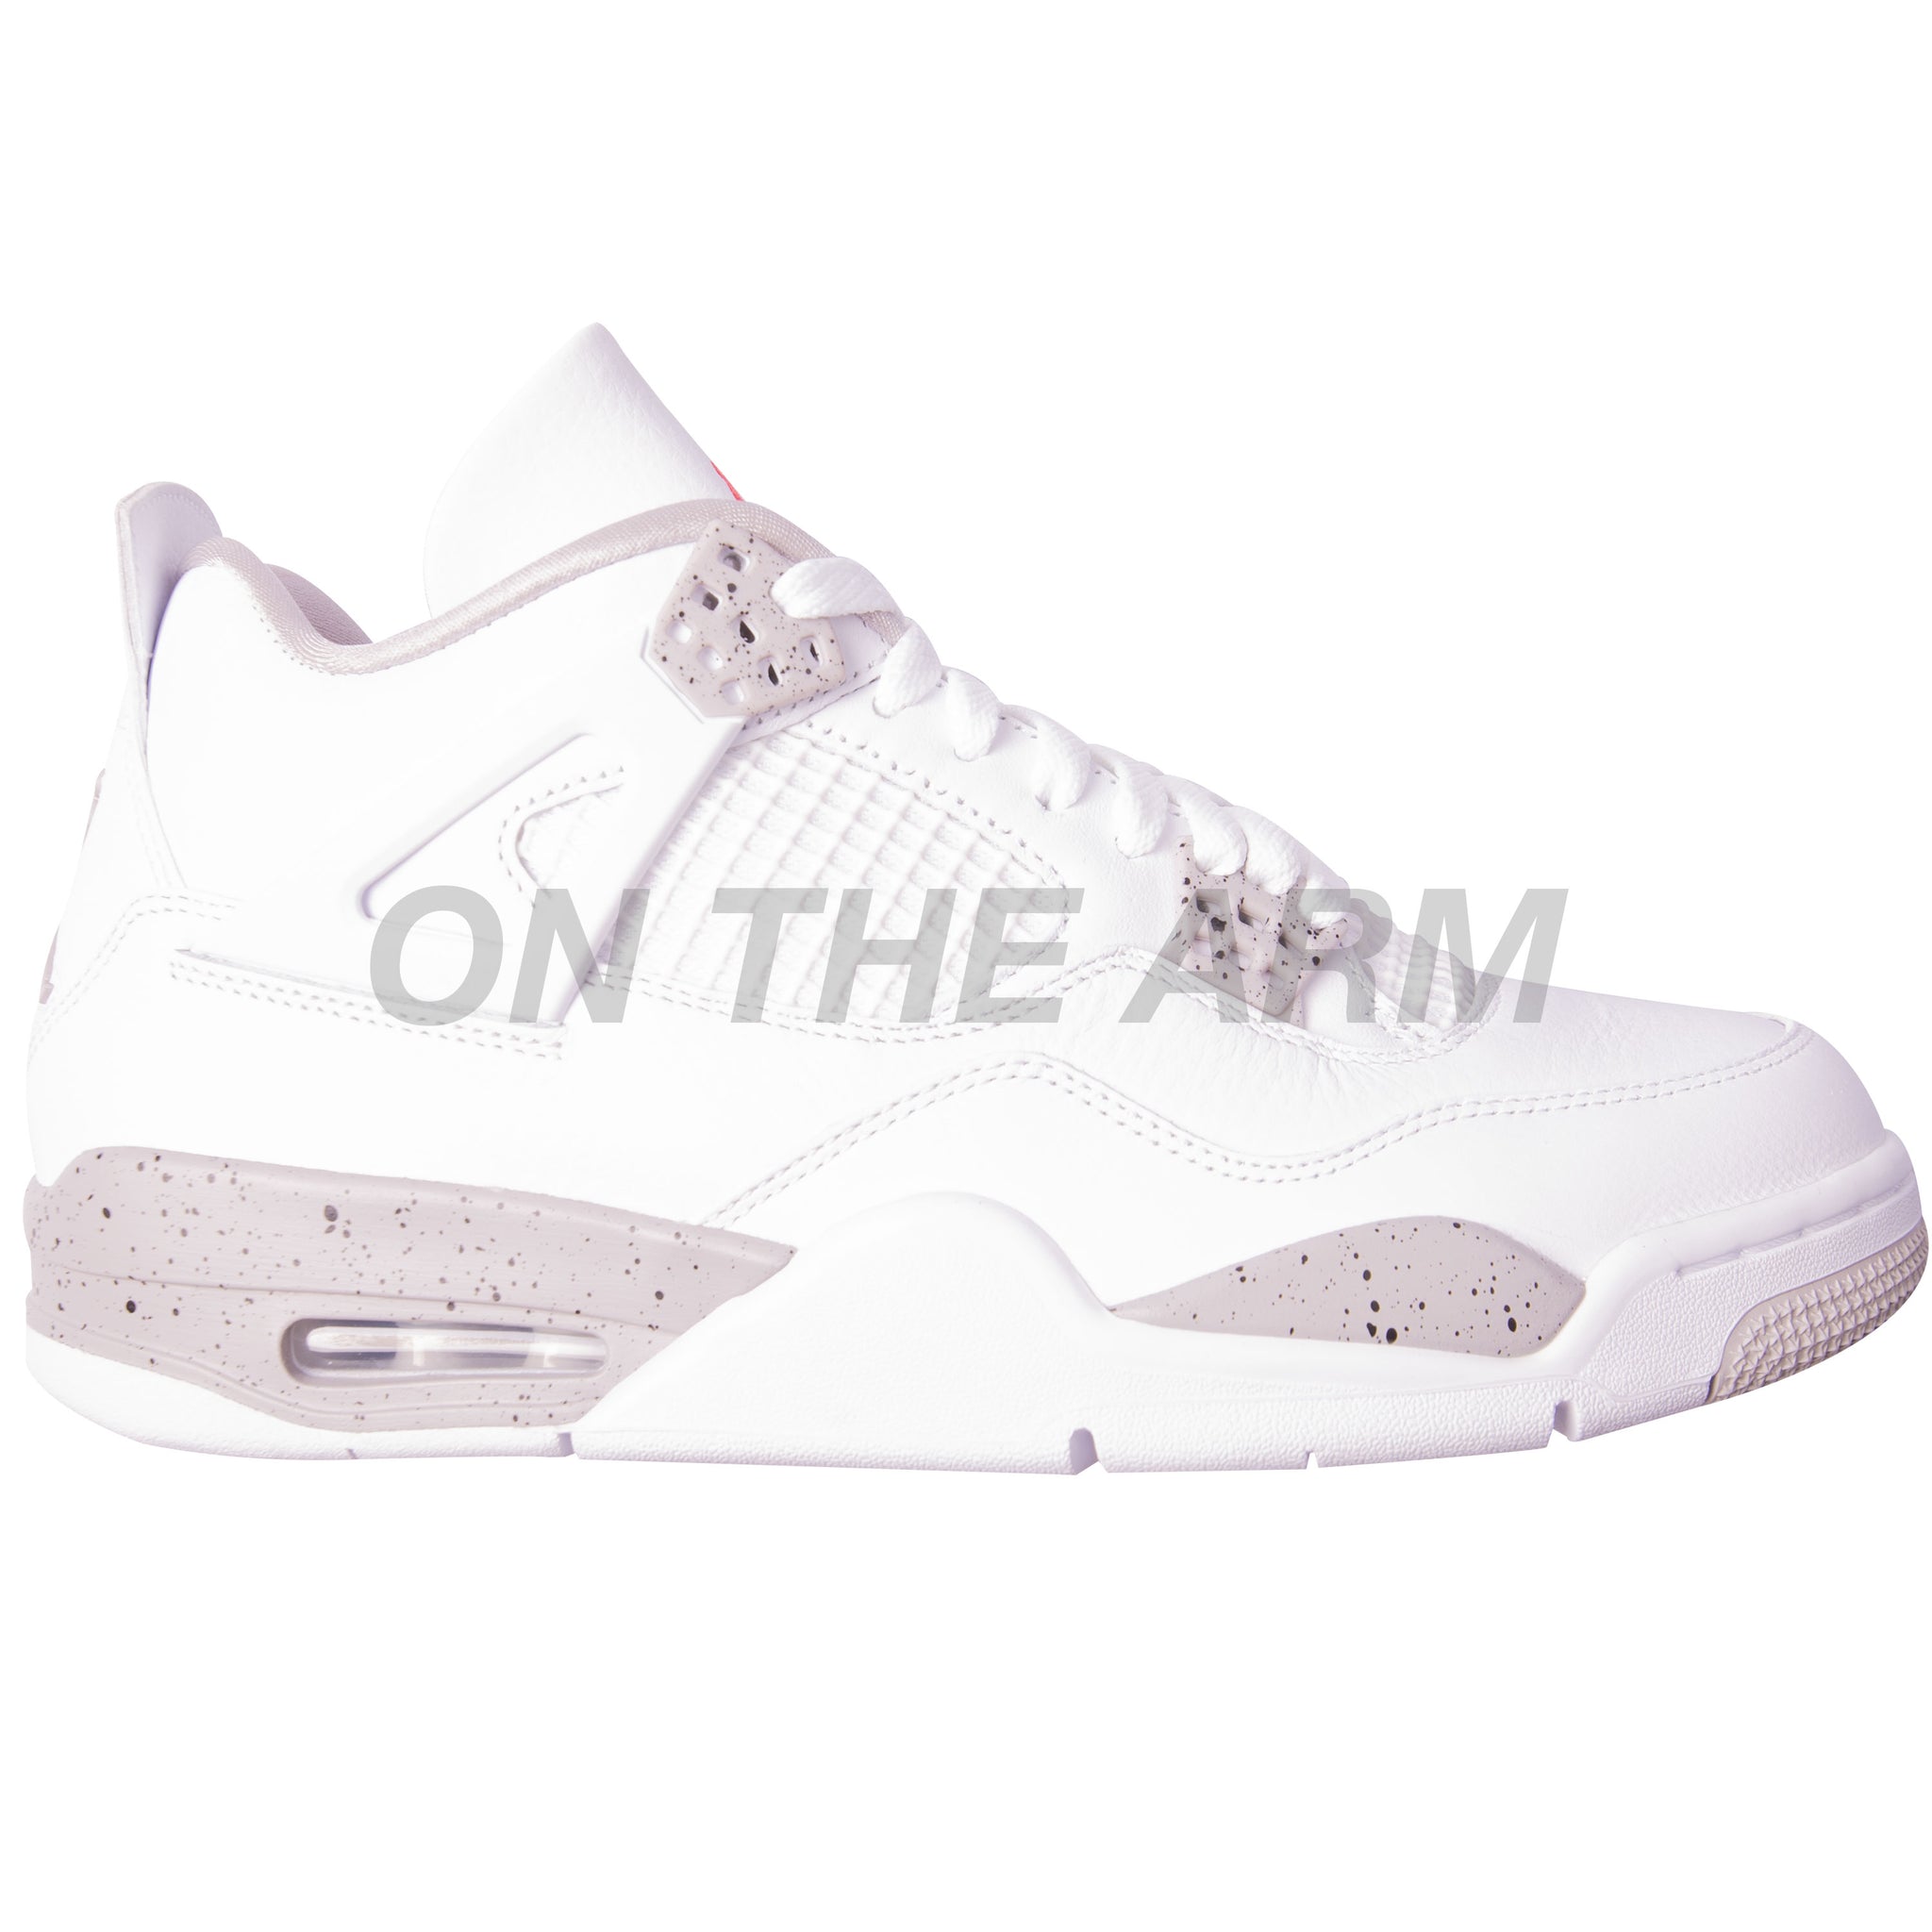 Air Jordan 4 Retro 'White Oreo' Shoes - Size 10